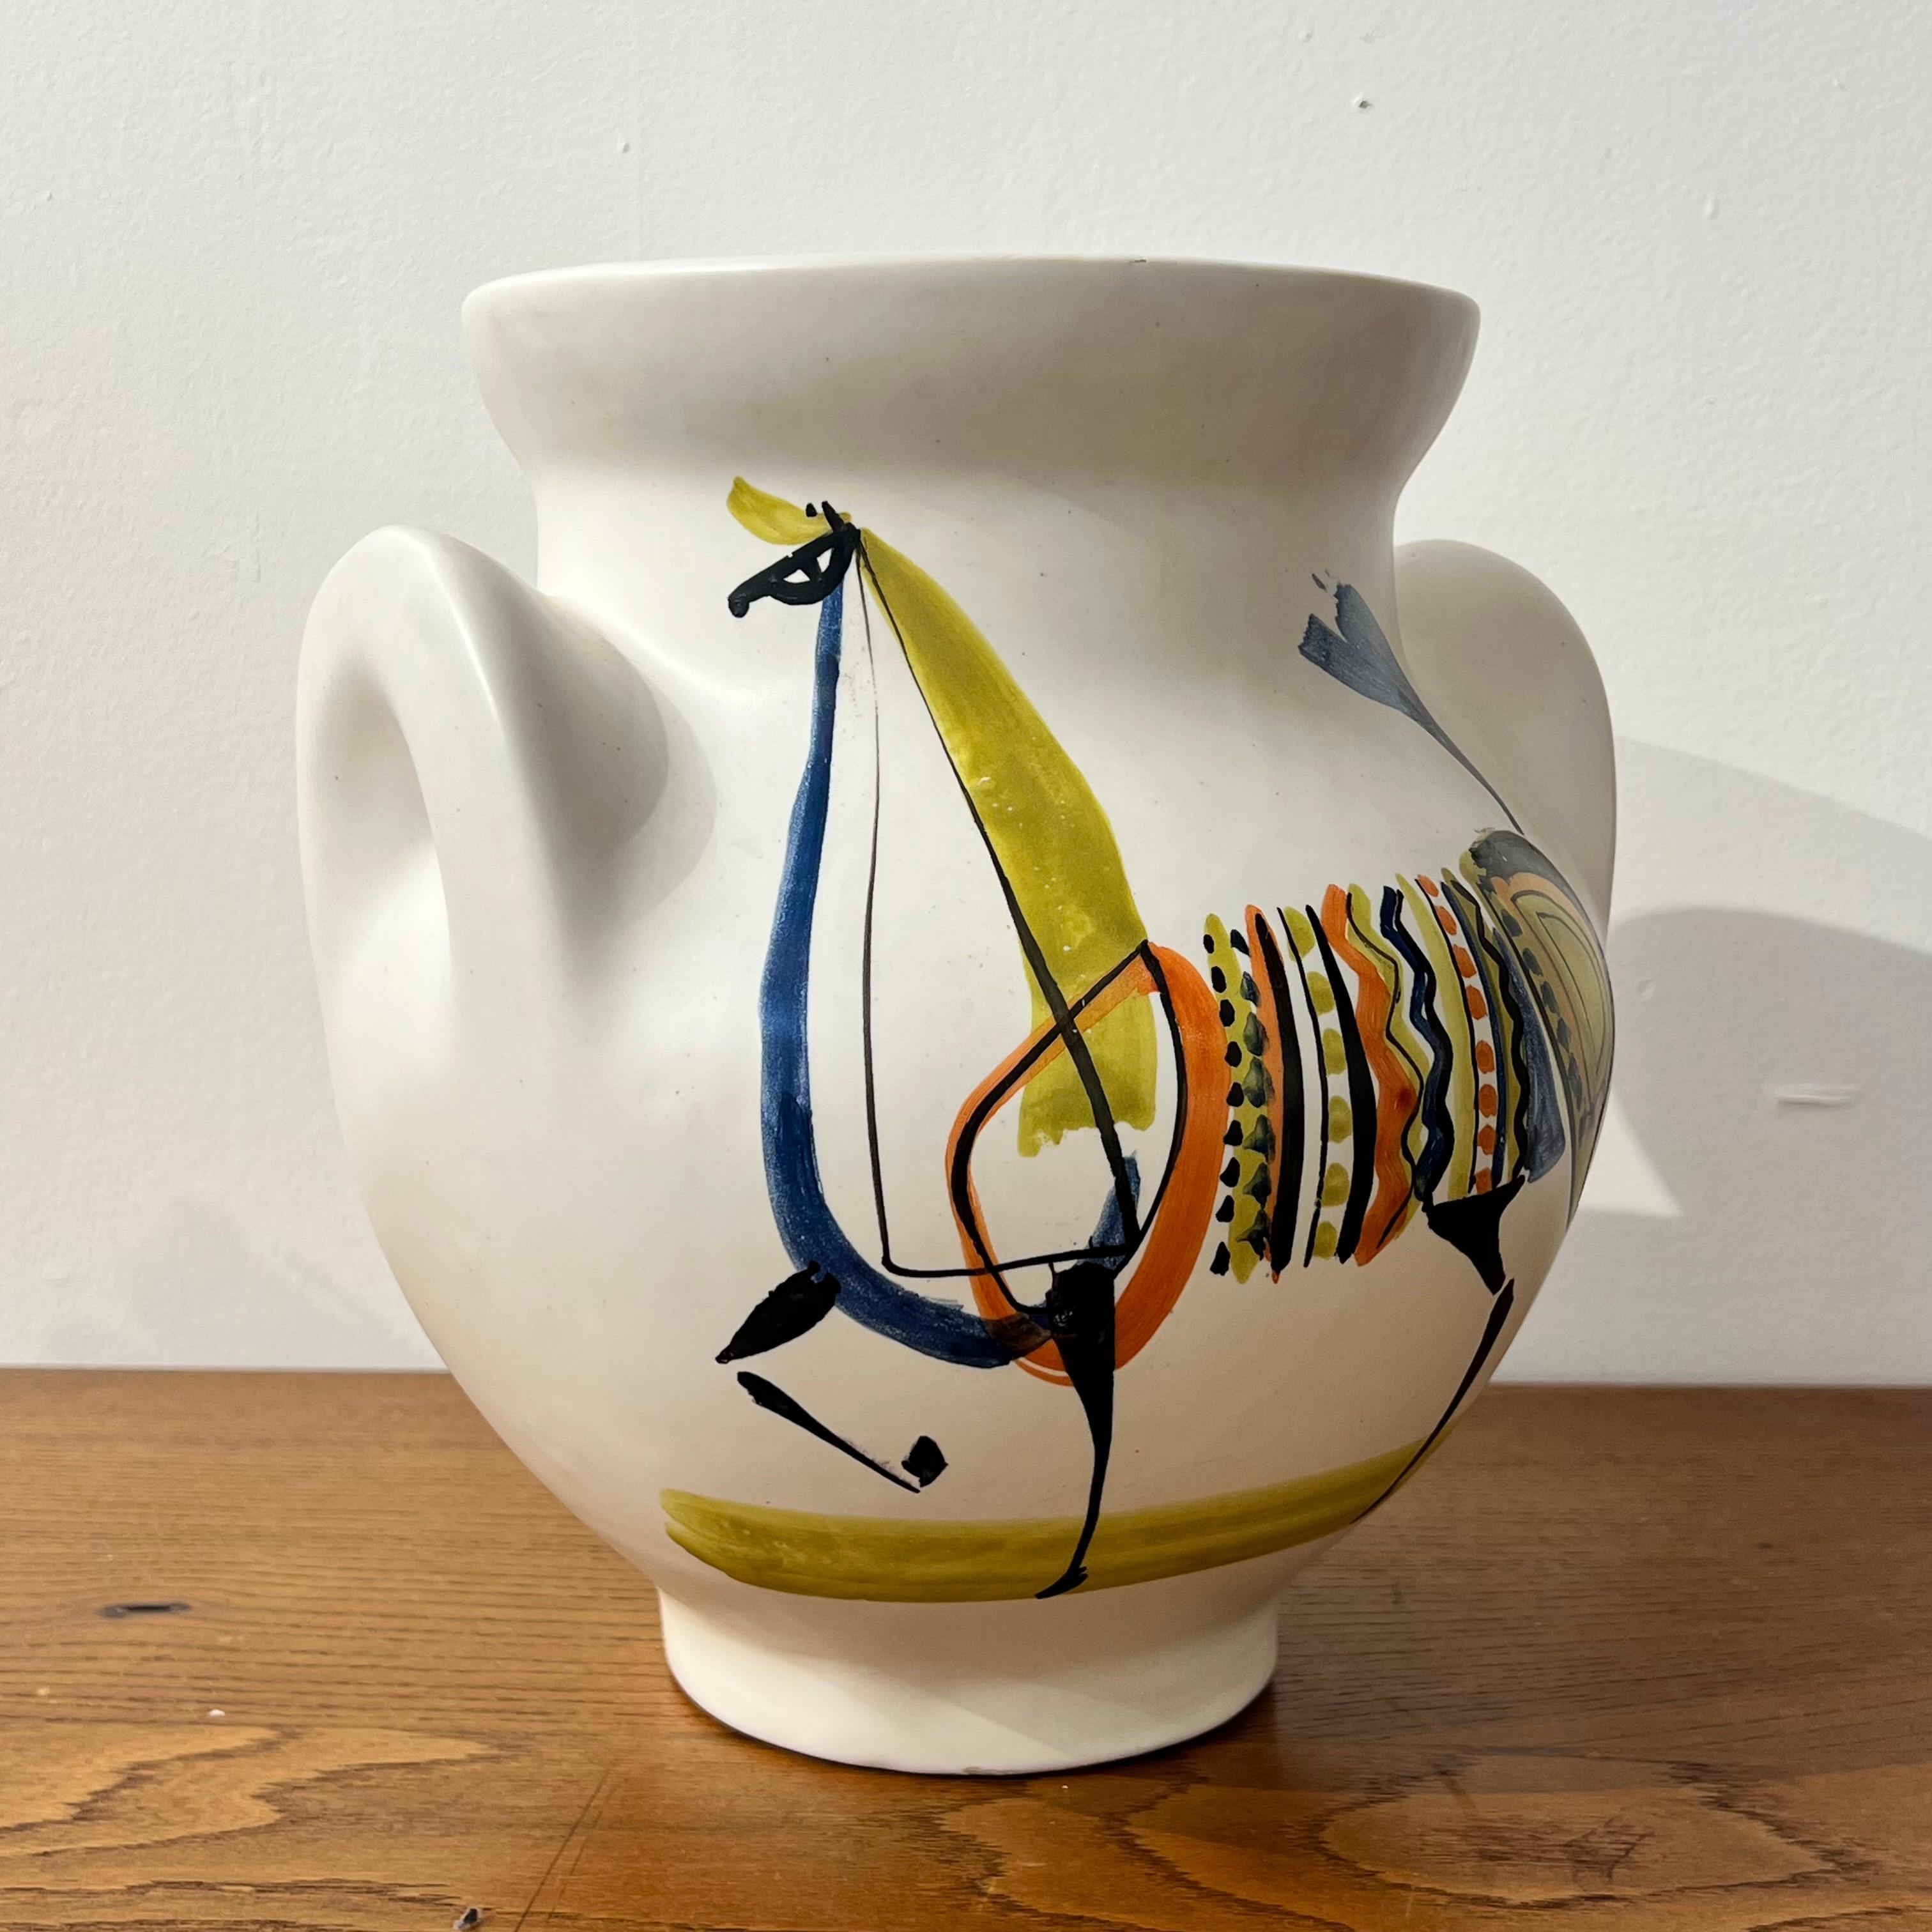 Eine schöne Vase à oreilles von Roger Capron

Dieses schöne Beispiel wurde in den 1950er Jahren in Vallauris hergestellt und zeigt ein schönes Zoomorphe-Dekor.

Dies sind die am meisten gesammelten Formen von Vasen des Künstlers